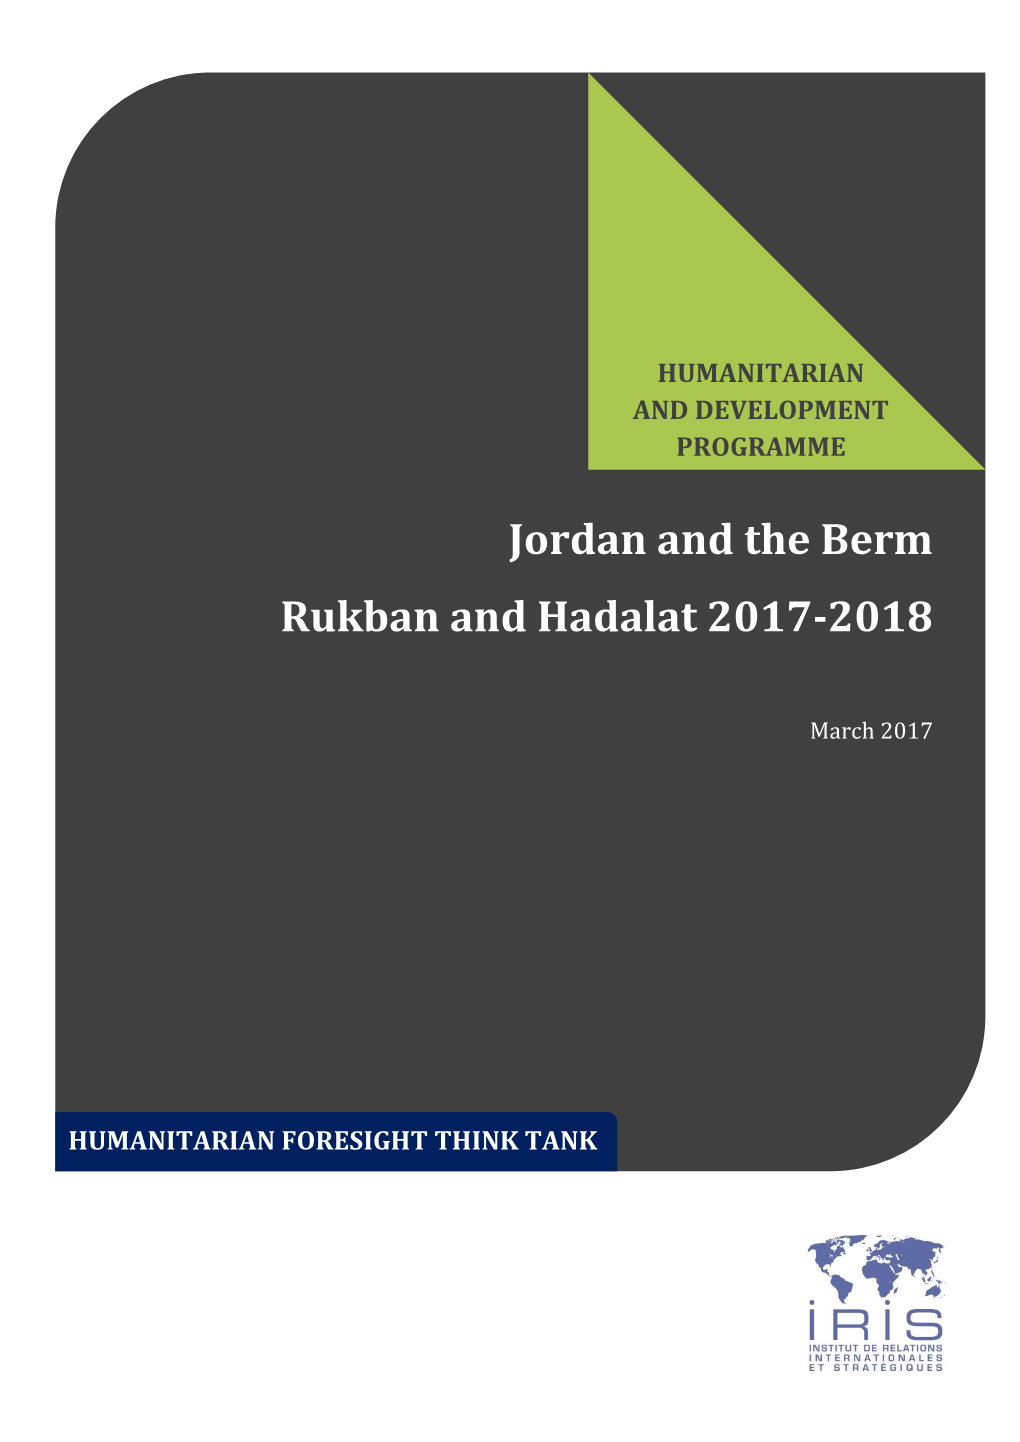 Jordan and the Berm Rukban and Hadalat 2017-2018